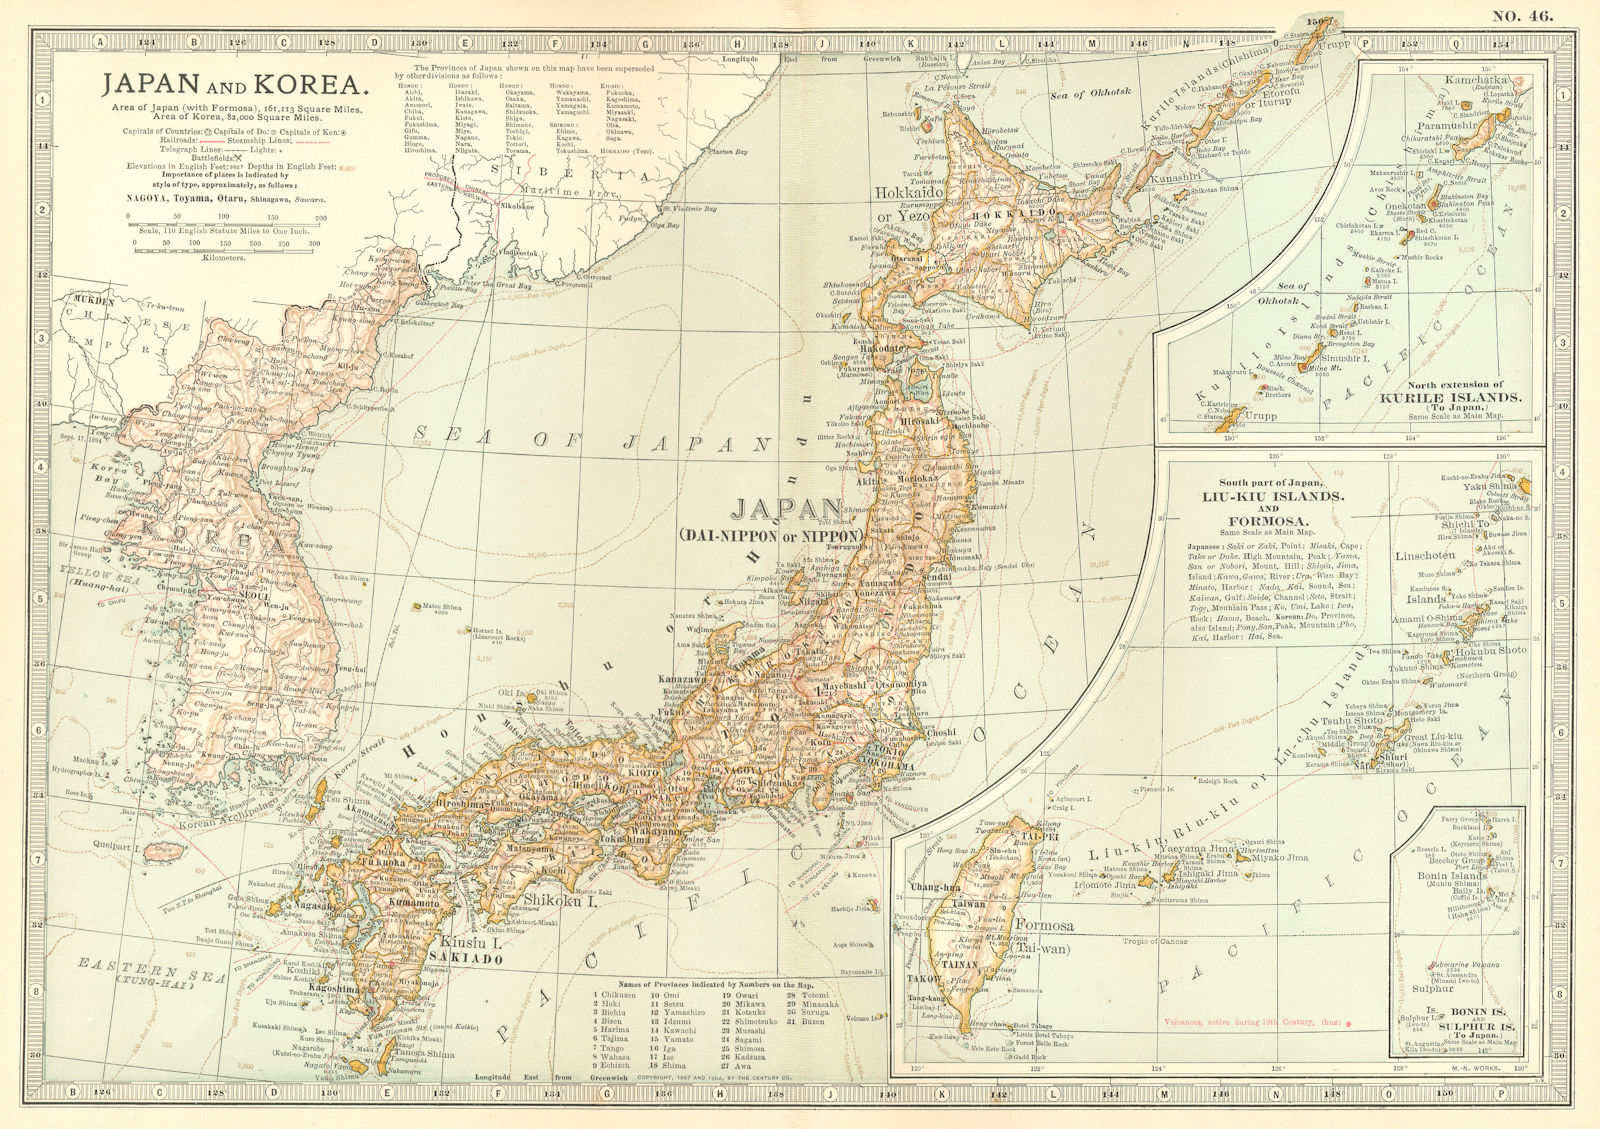 JAPAN KOREA. Sino-Japanese war 1894 Shimonoseki 1863/4 battles/dates 1903 map